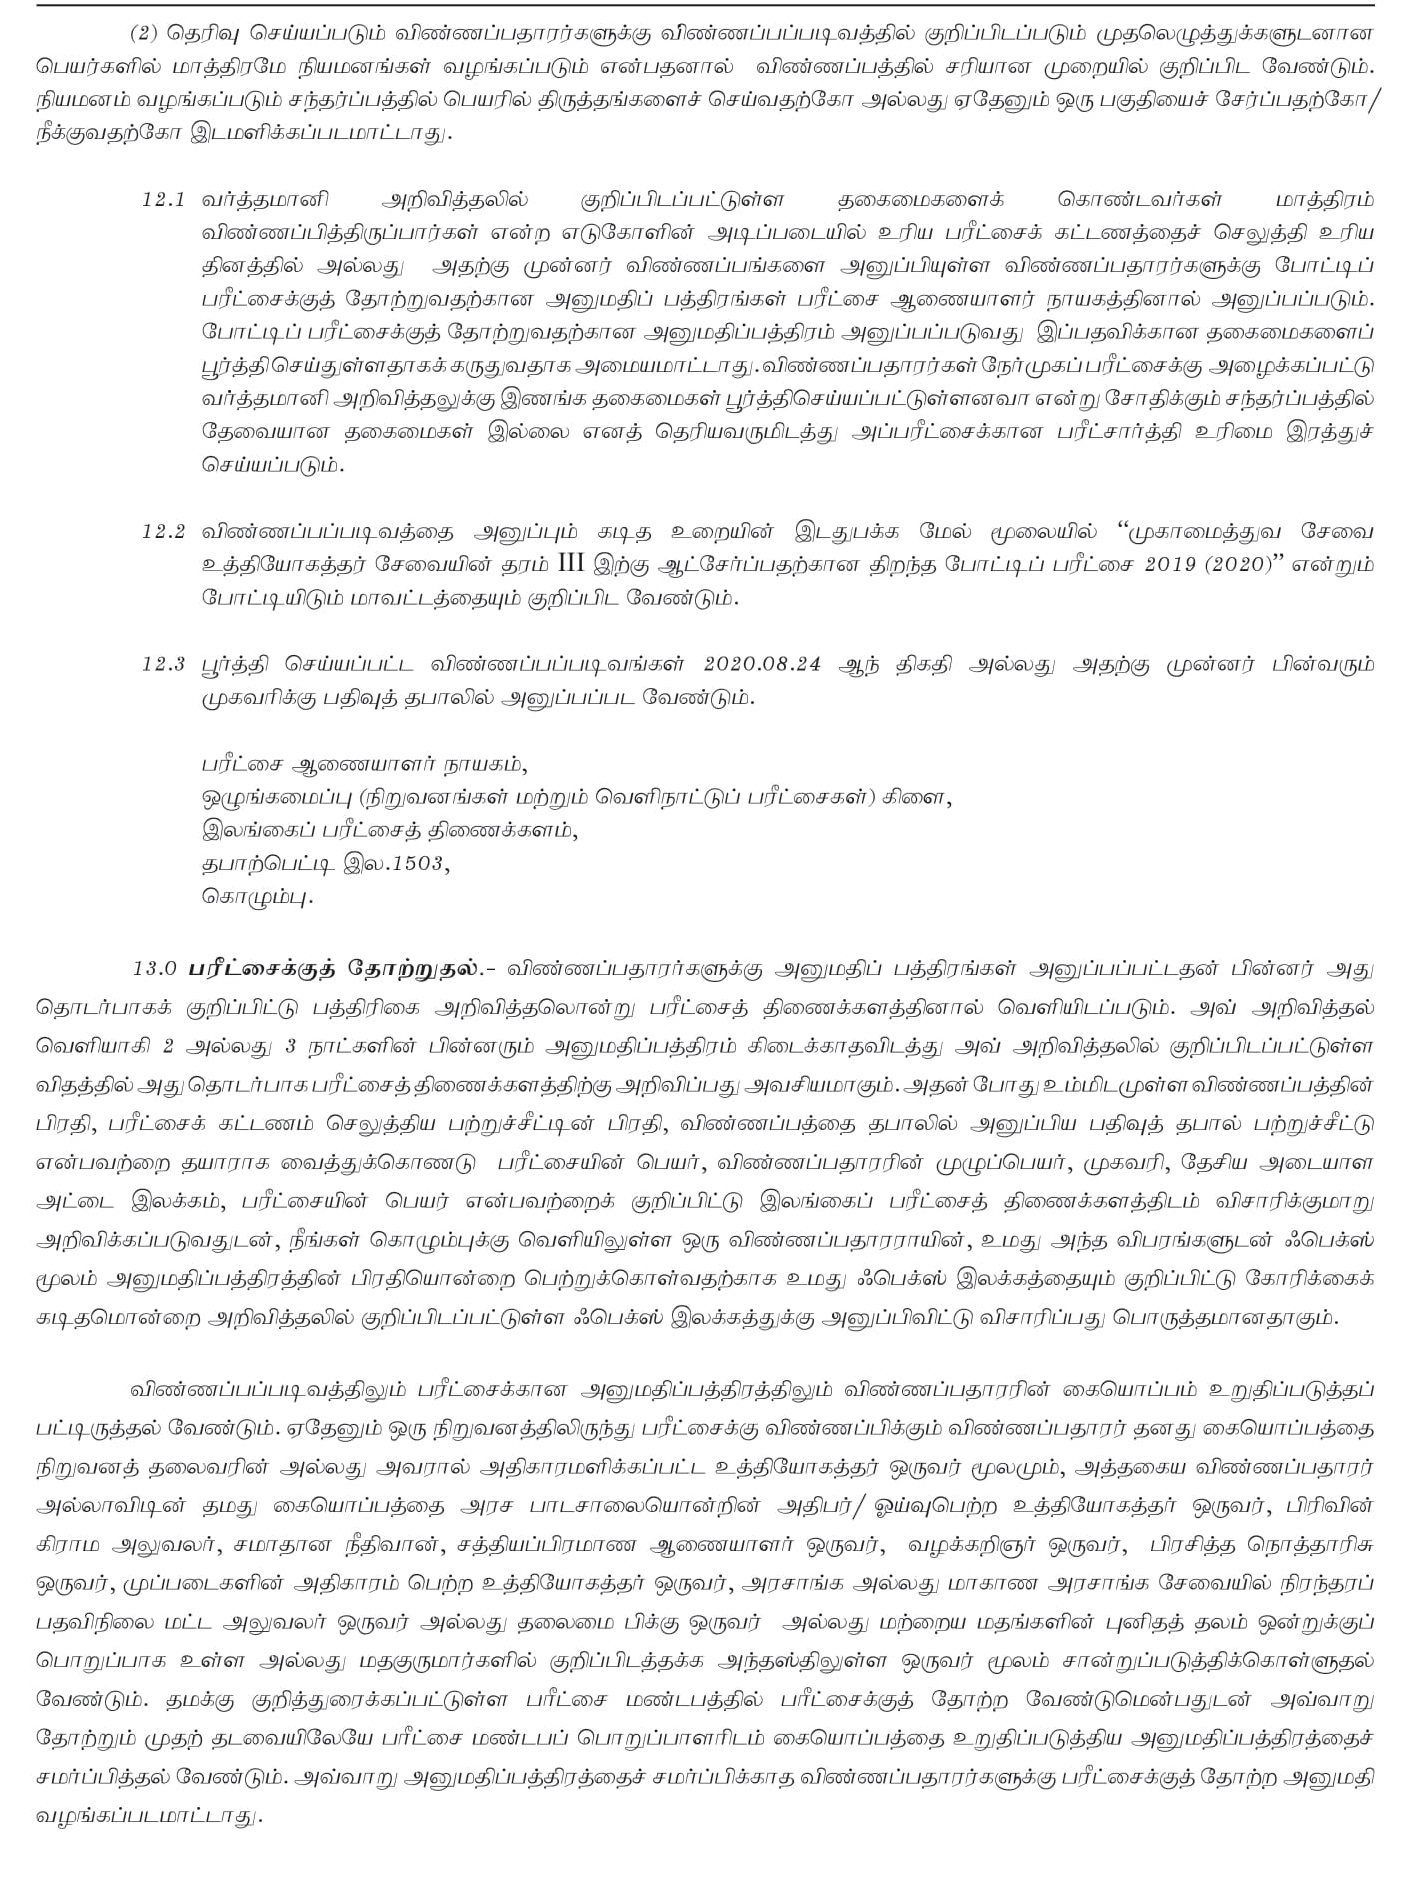 ma tamil thesis pdf